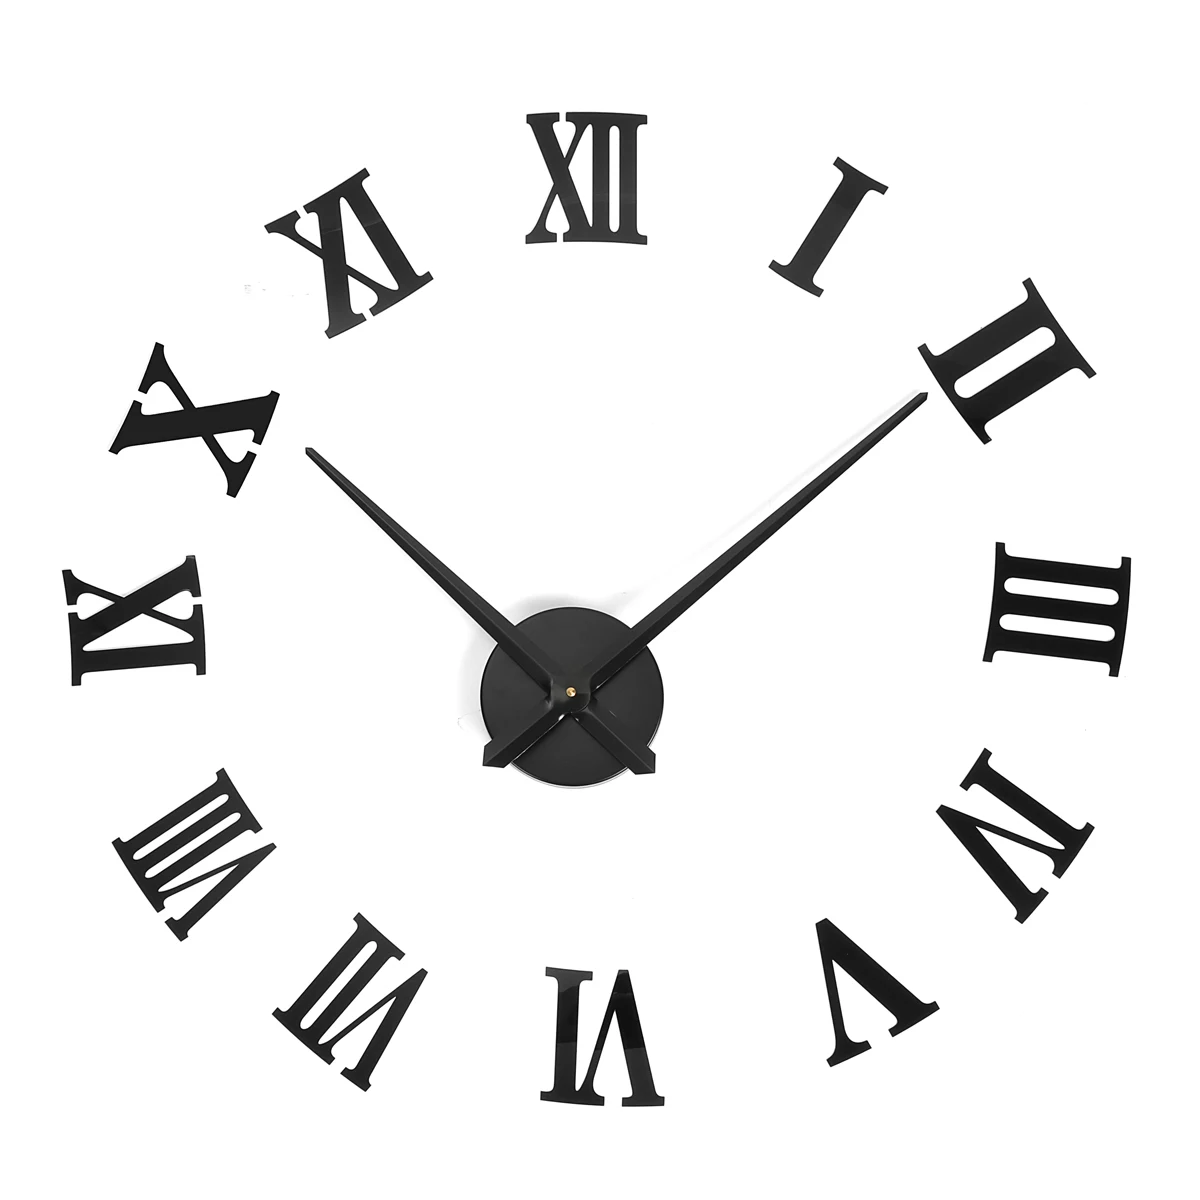 Новые римские цифры DIY 3D настенные часы большого размера зеркала Роскошные художественные настенные наклейки для домашнего декора бизнес/праздник/про подарки